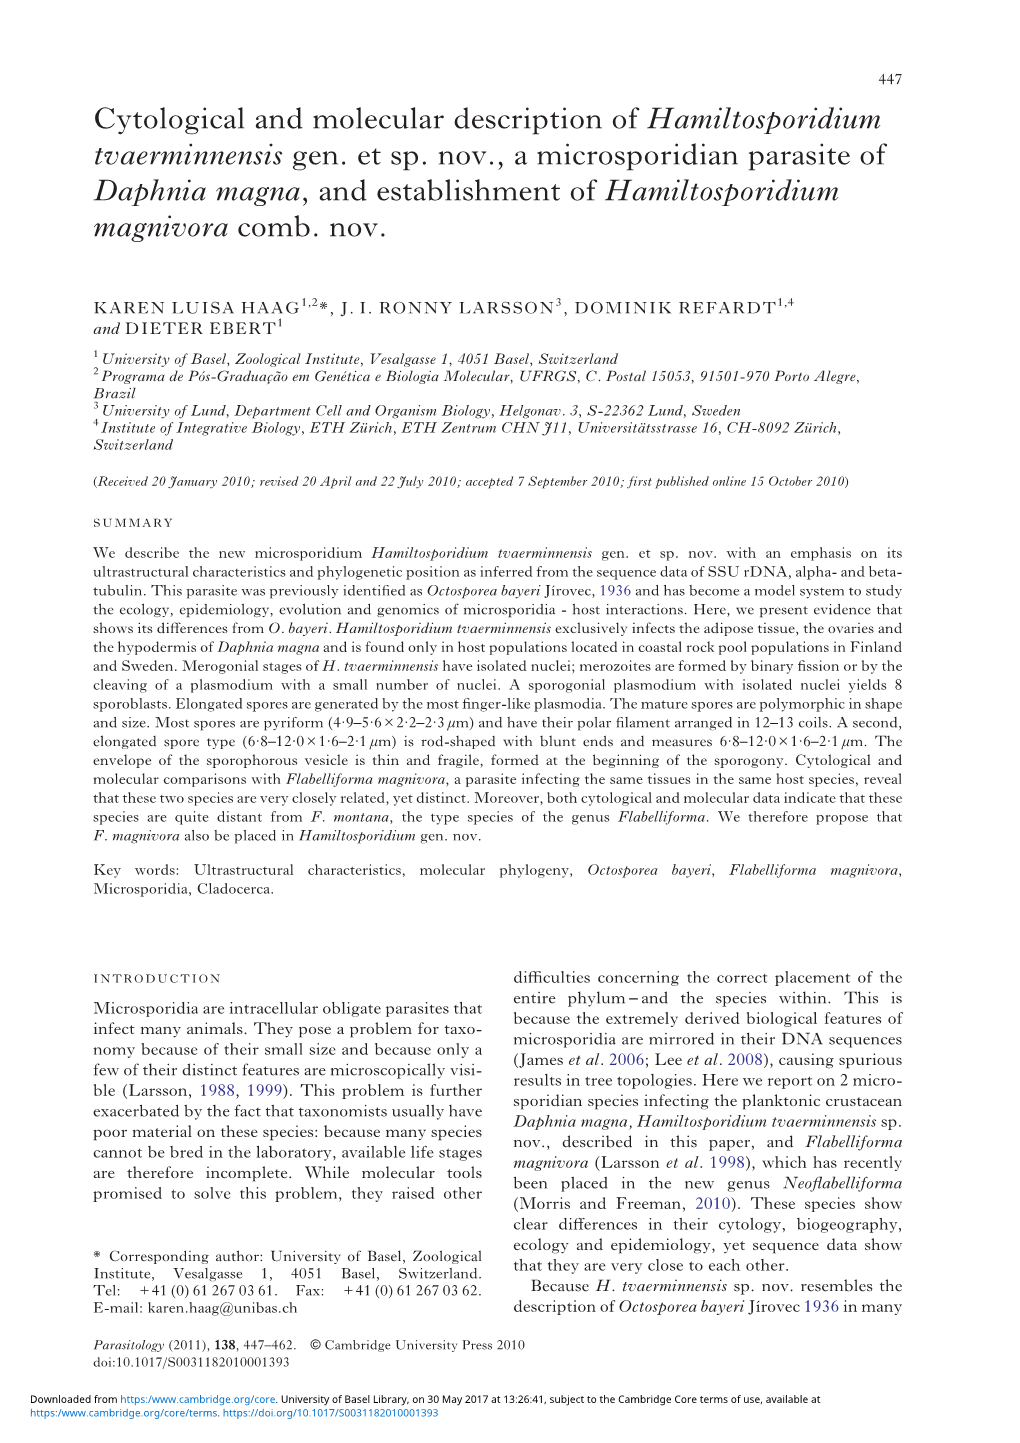 Cytological and Molecular Description of Hamiltosporidium Tvaerminnensis Gen